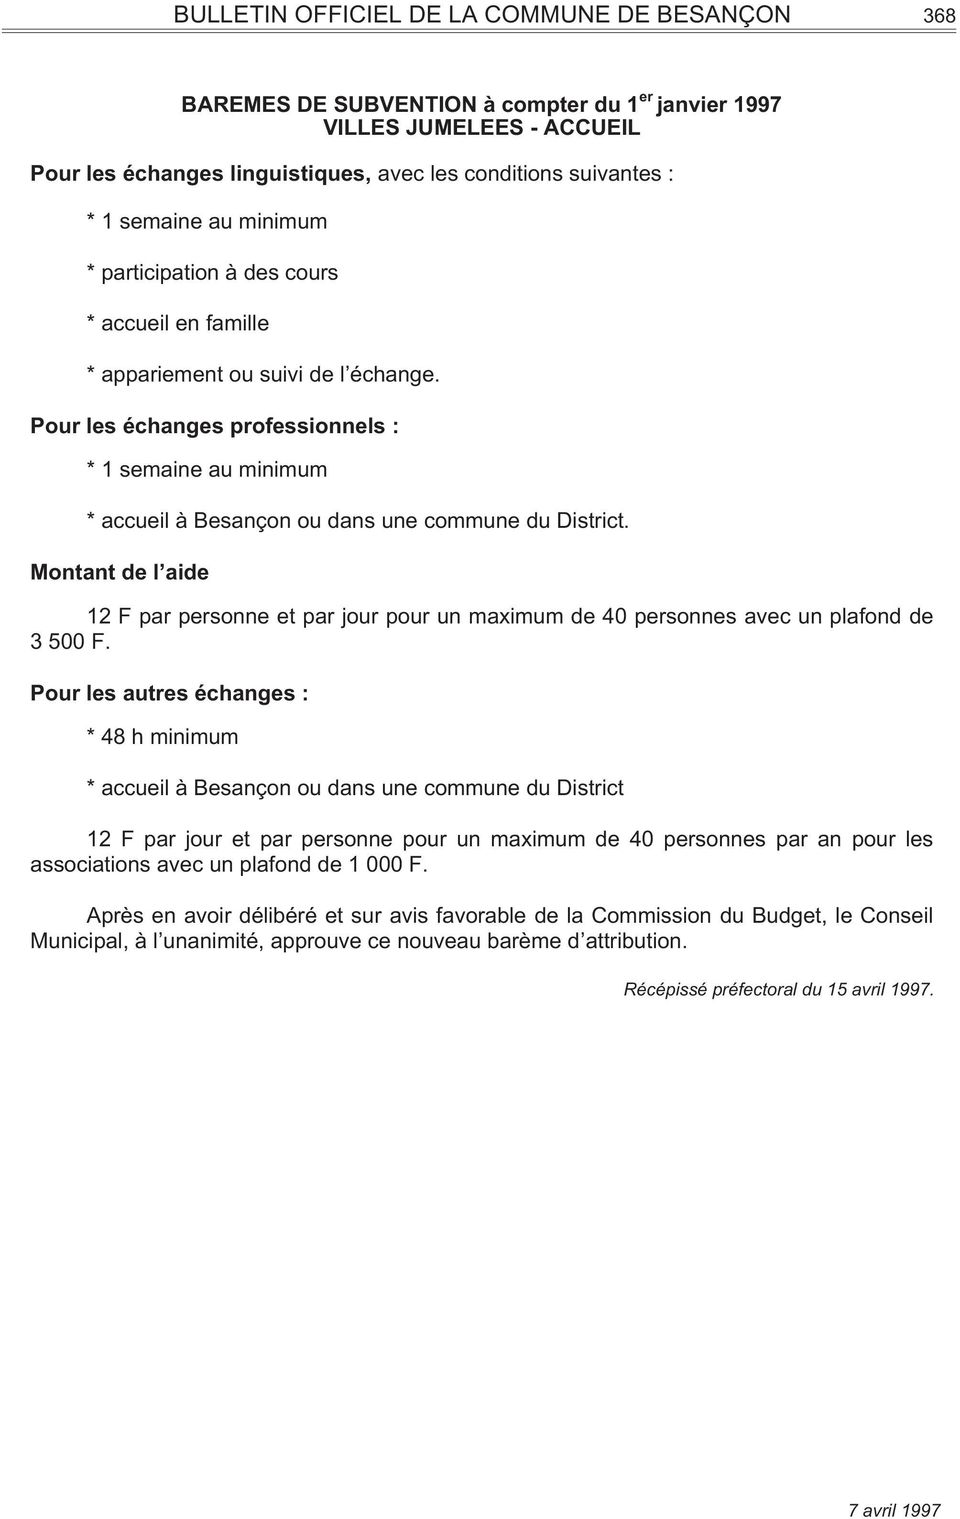 Pour les autres échanges : * 48 h minimum * accueil à Besançon ou dans une commune du District 12 F par jour et par personne pour un maximum de 40 personnes par an pour